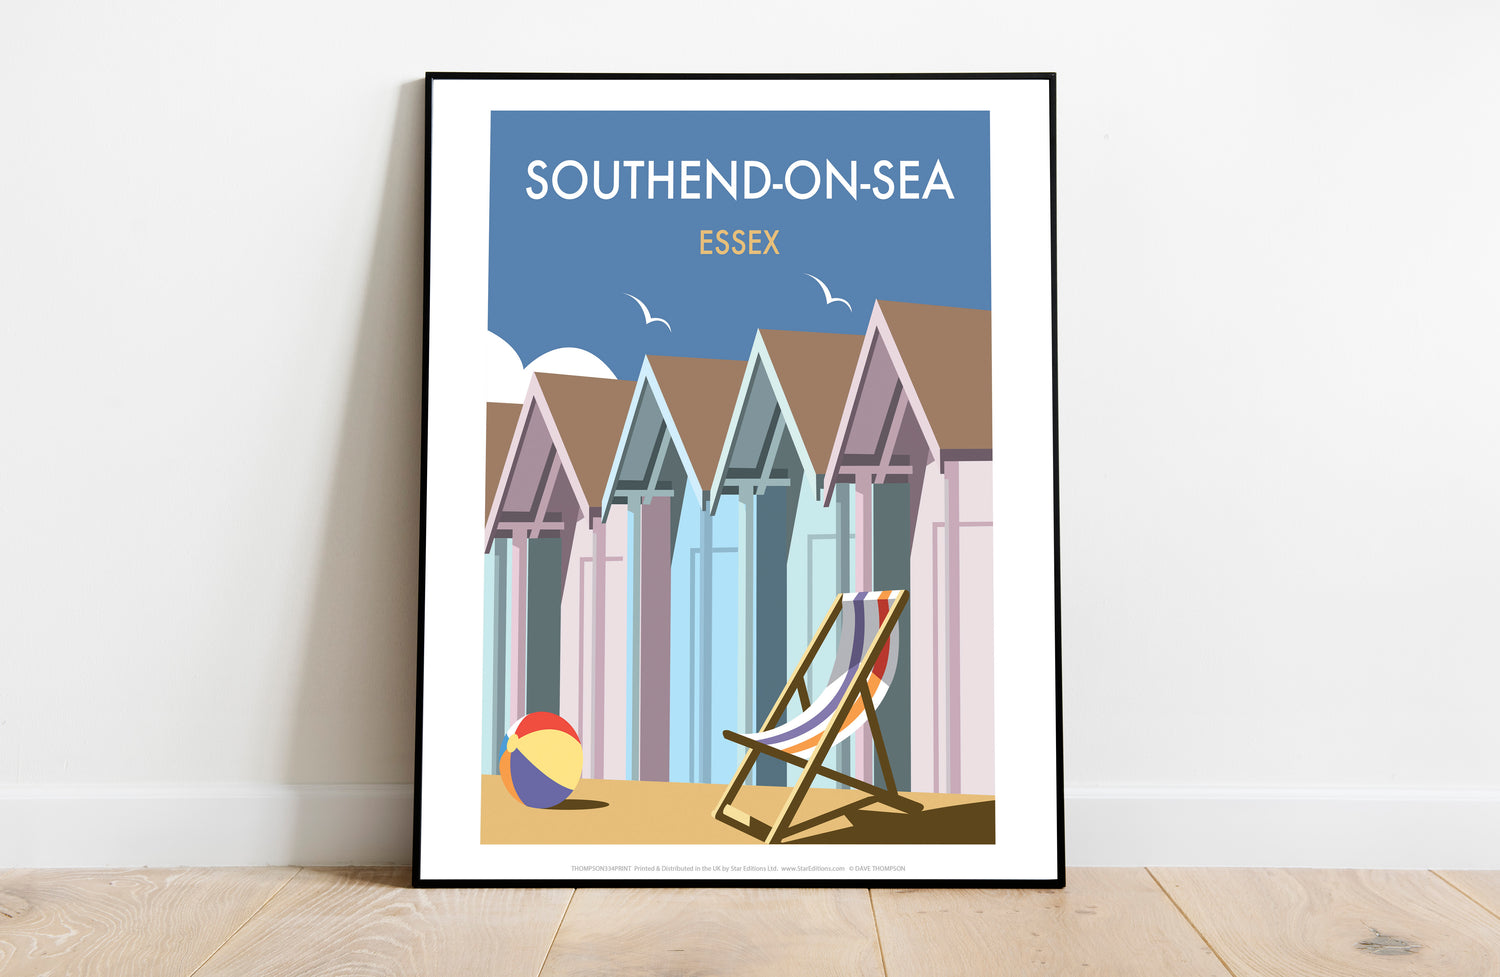 Beach Huts, Essex - Art Print